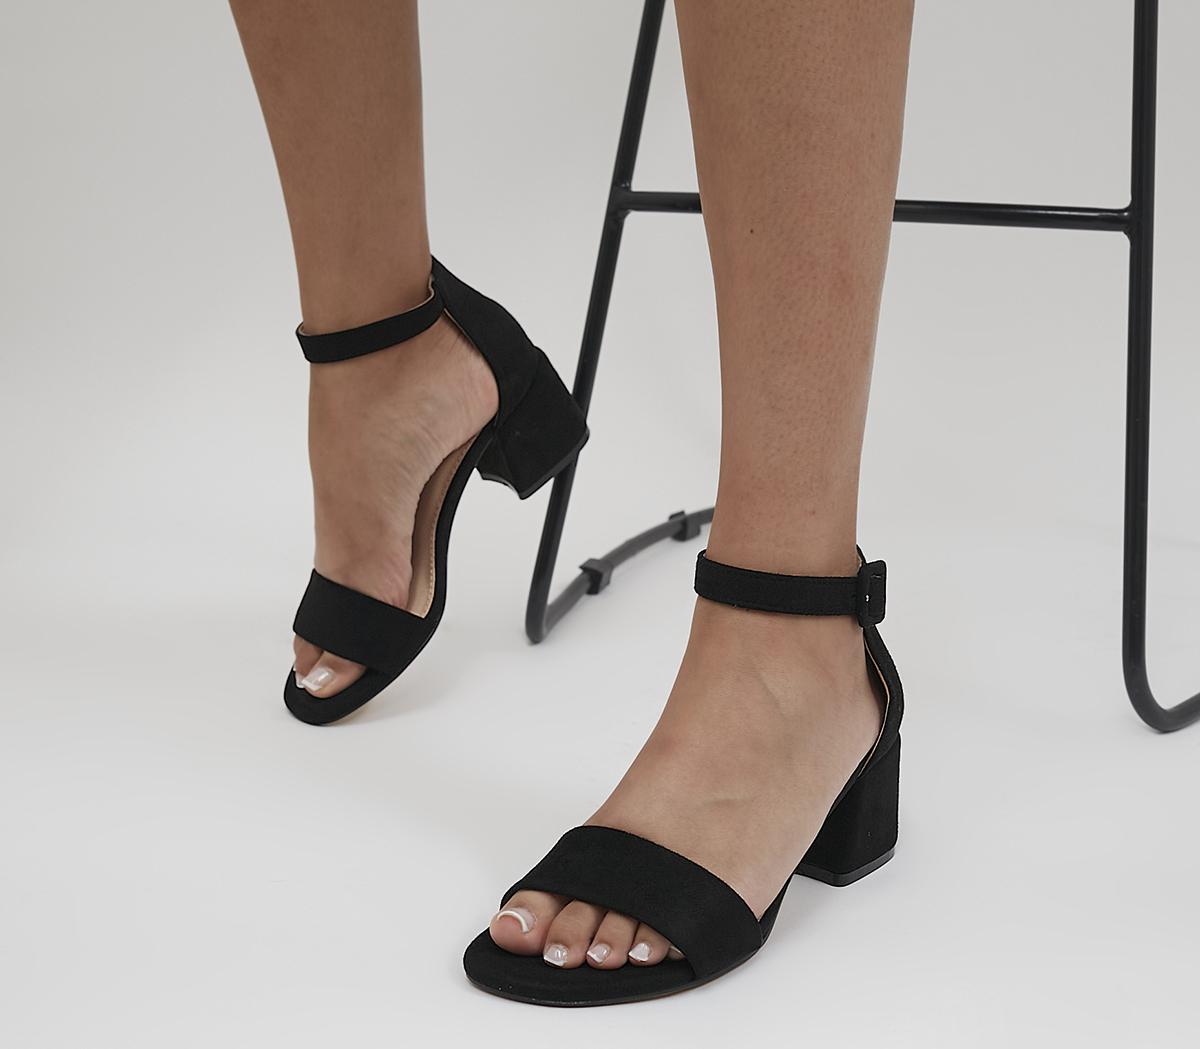 Trendy Black Sandals - High Heel Sandals - Strappy Block Heels - Lulus